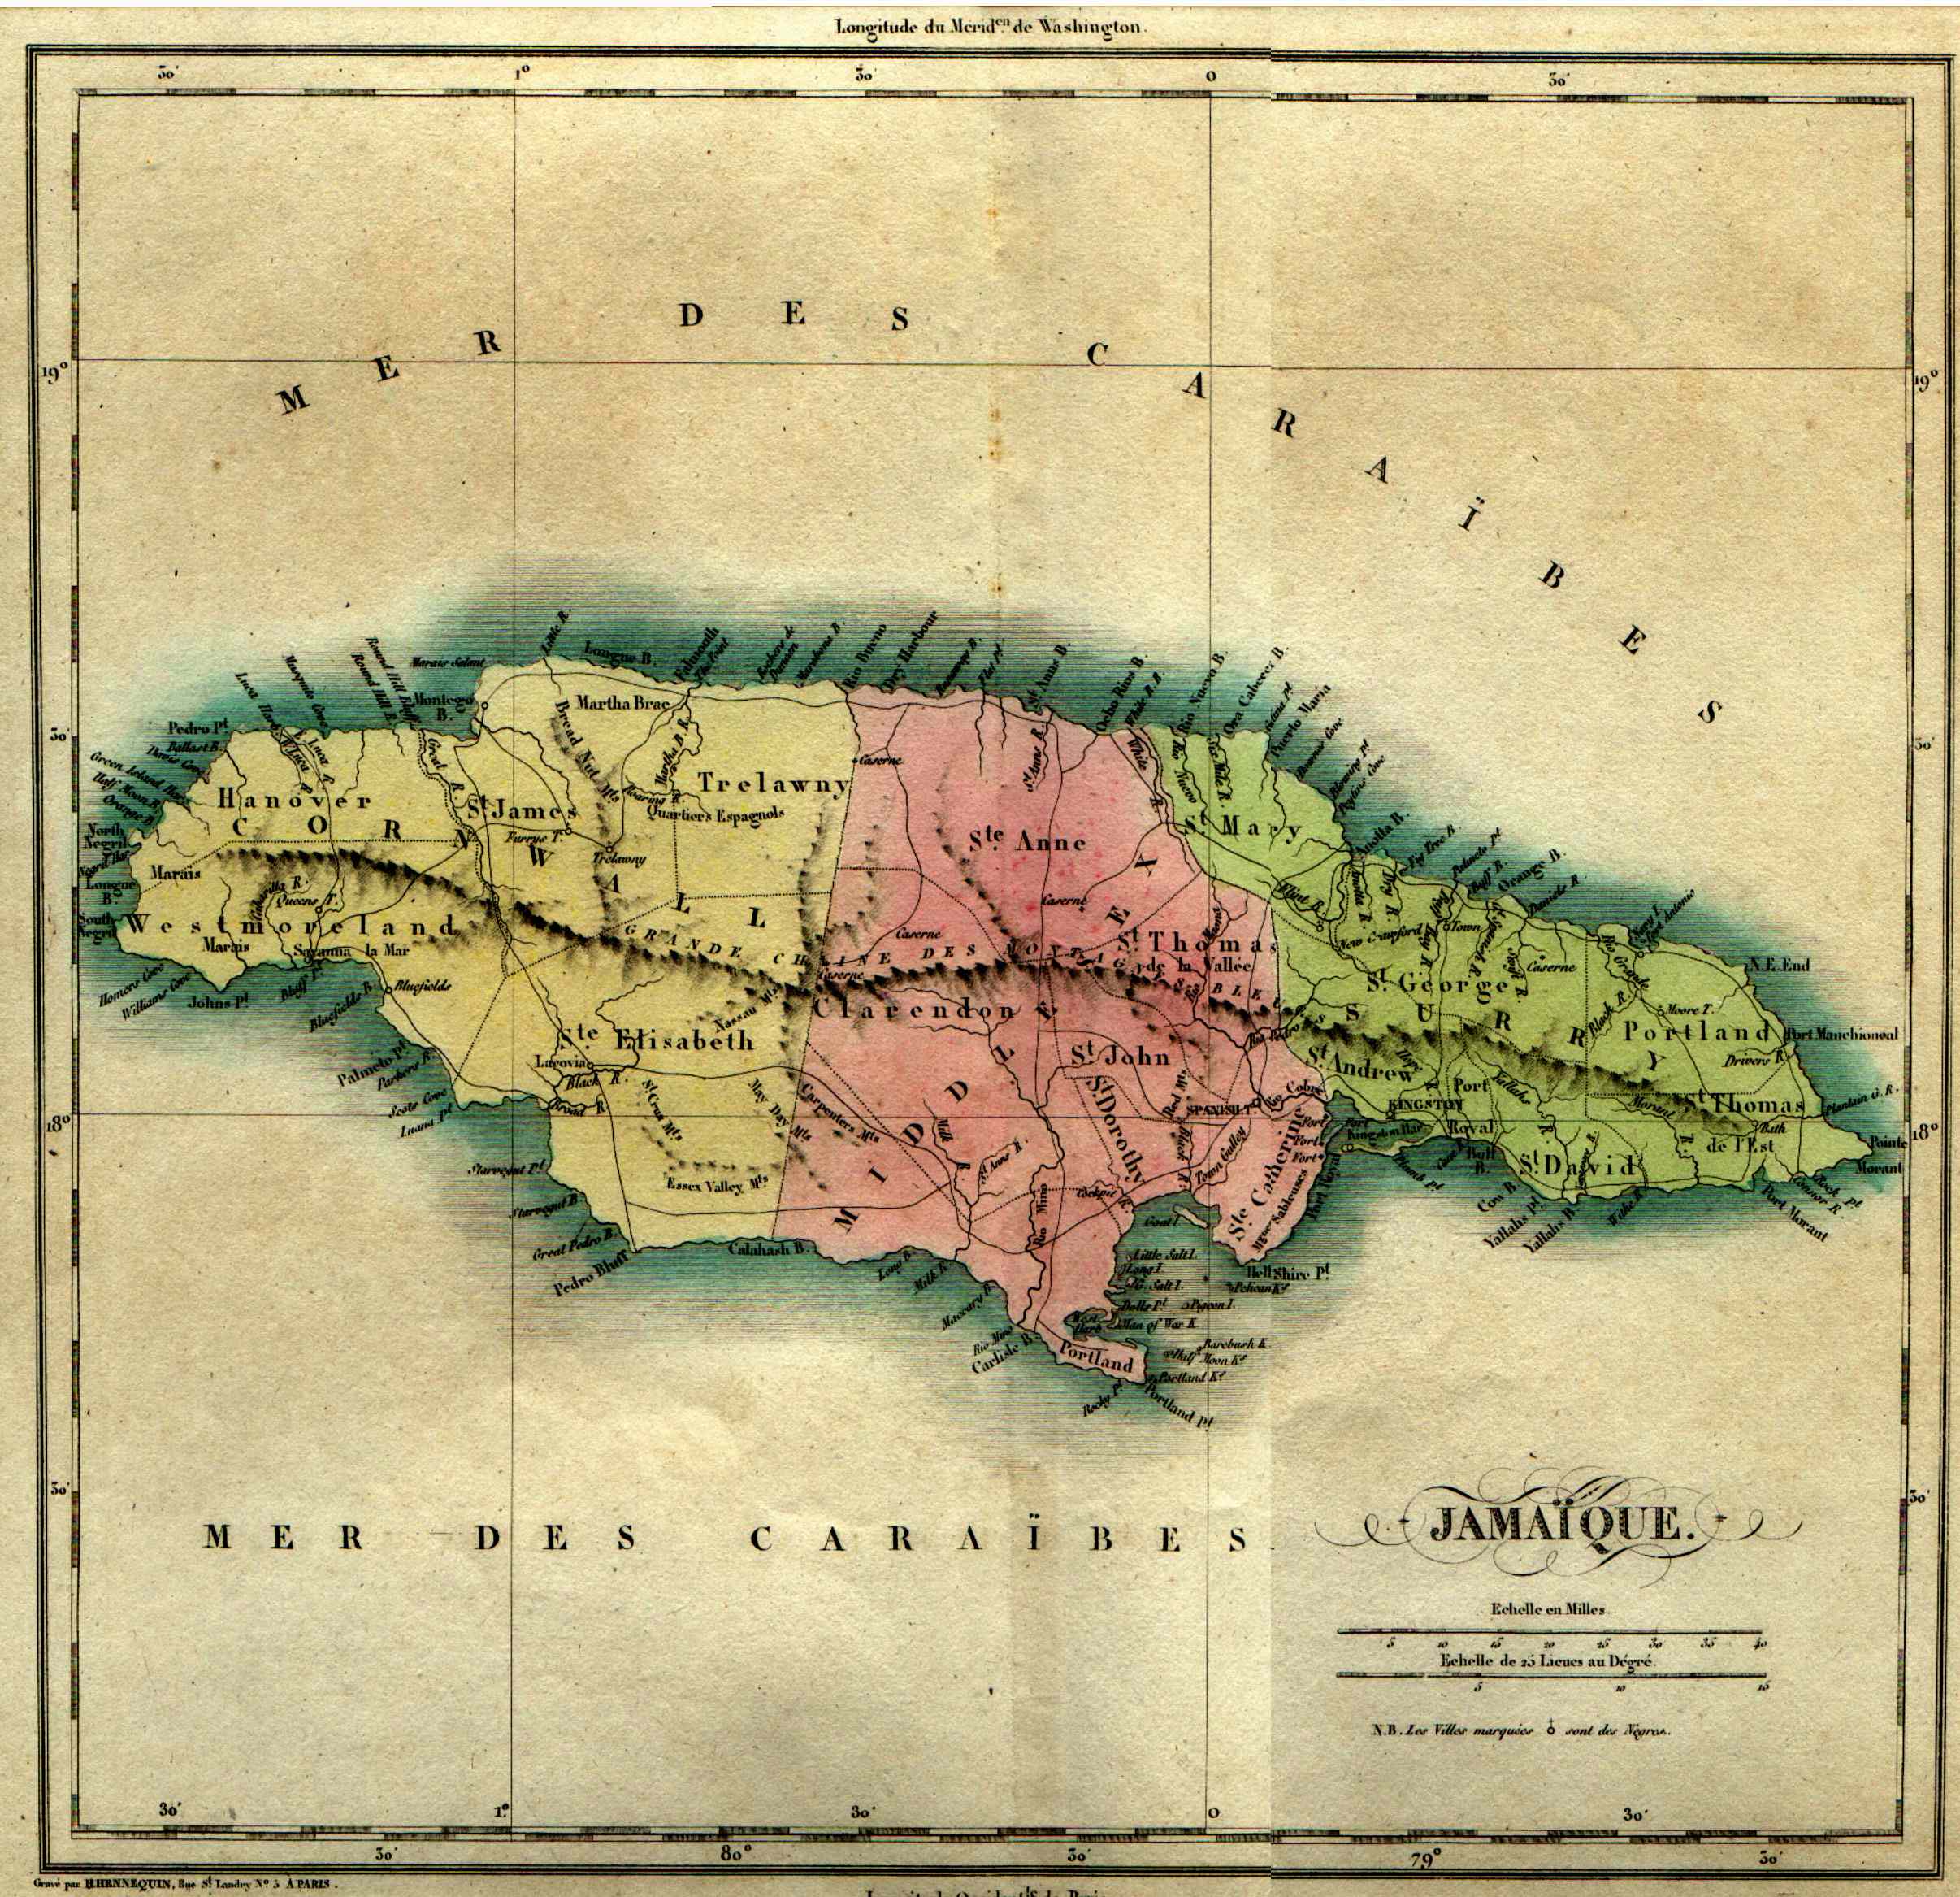 Buchon's Jamaique Map 1825